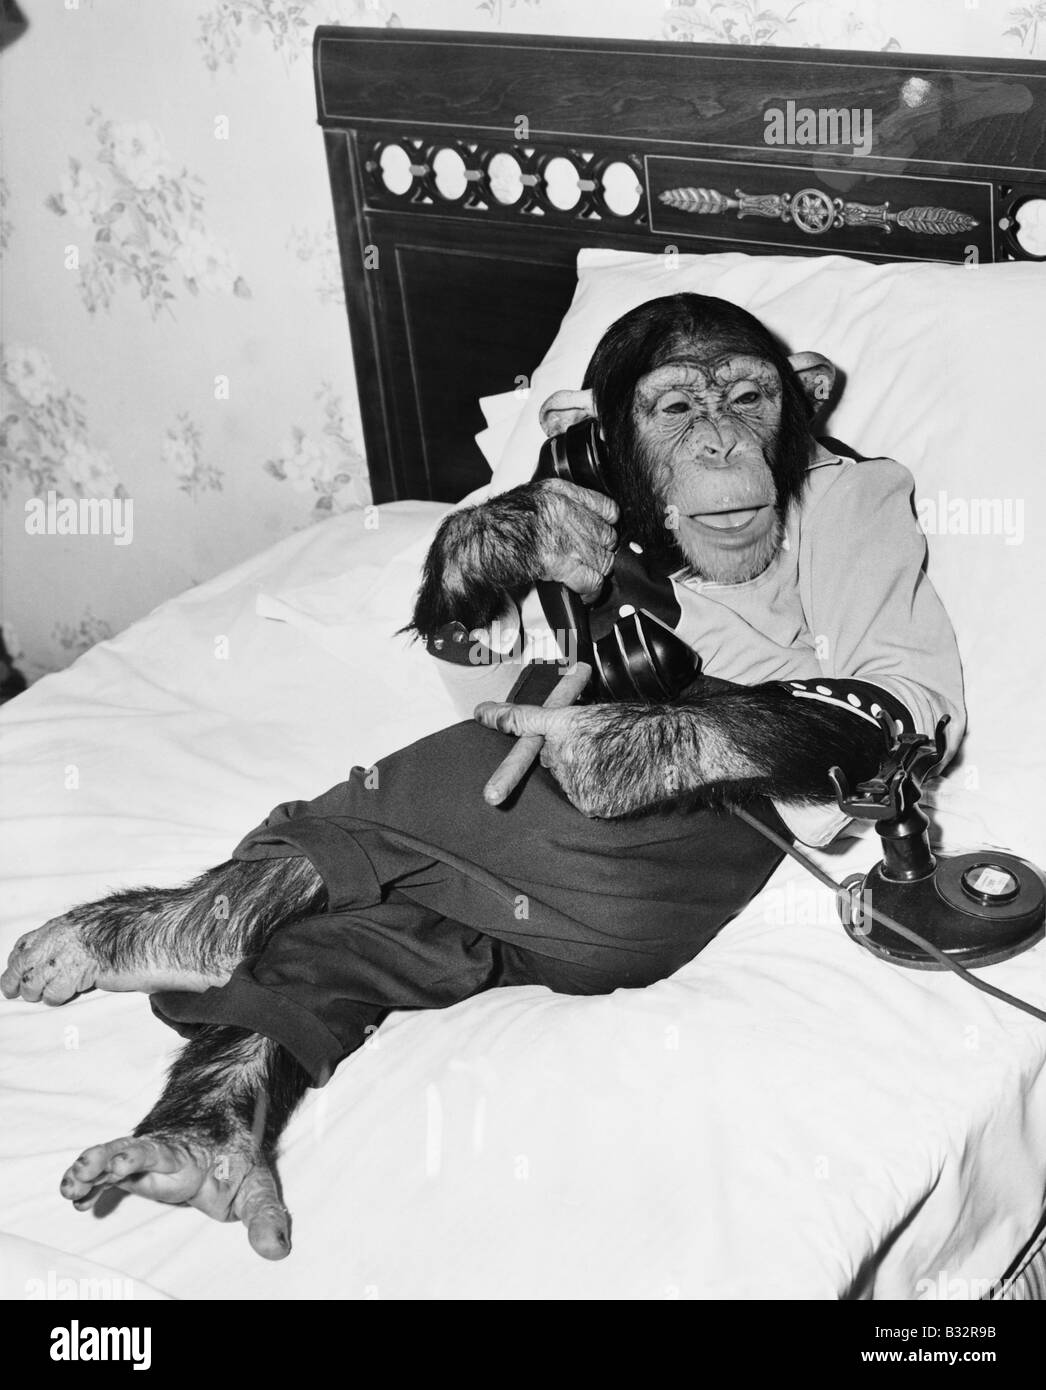 Schimpansen im Bett am Telefon sitzt und raucht eine Zigarre Stockfoto